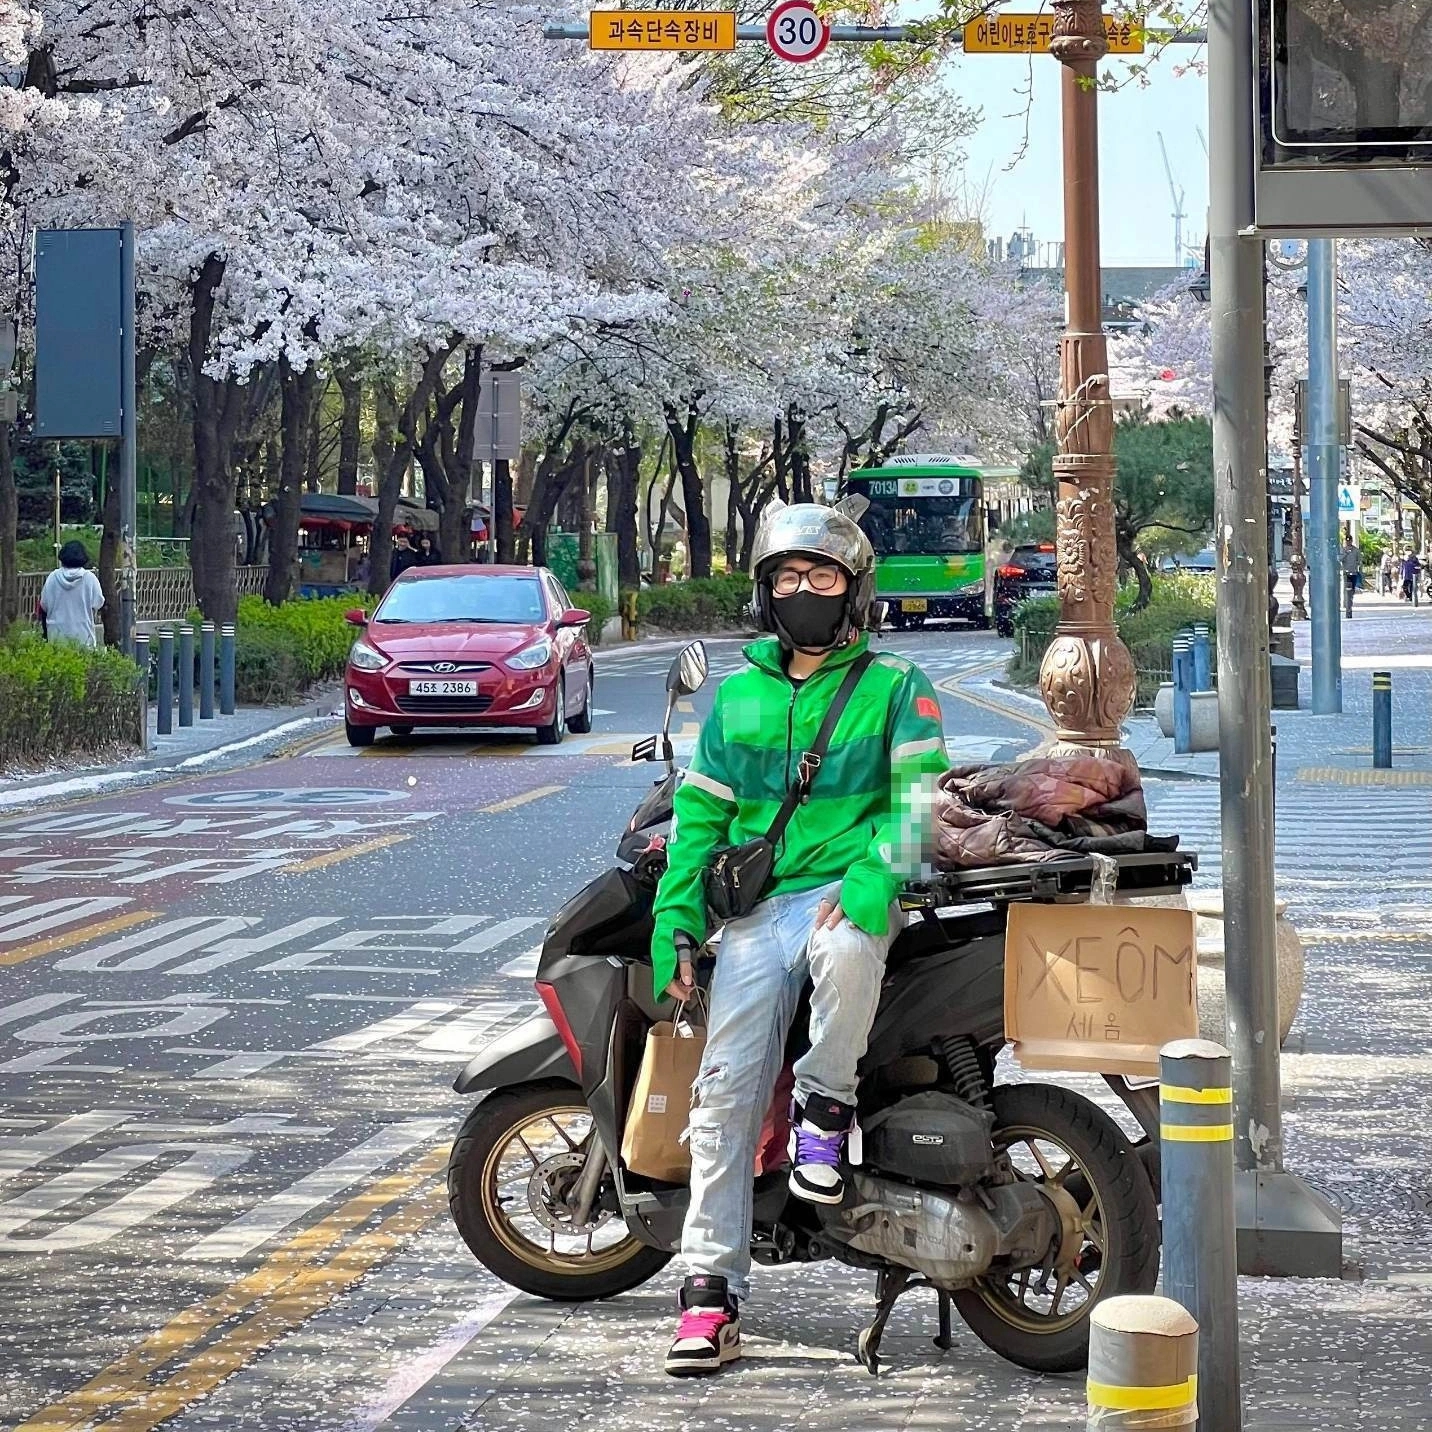 Thực hư chàng trai Việt chạy xe ôm trên đường phố Hàn Quốc - Ảnh 1.